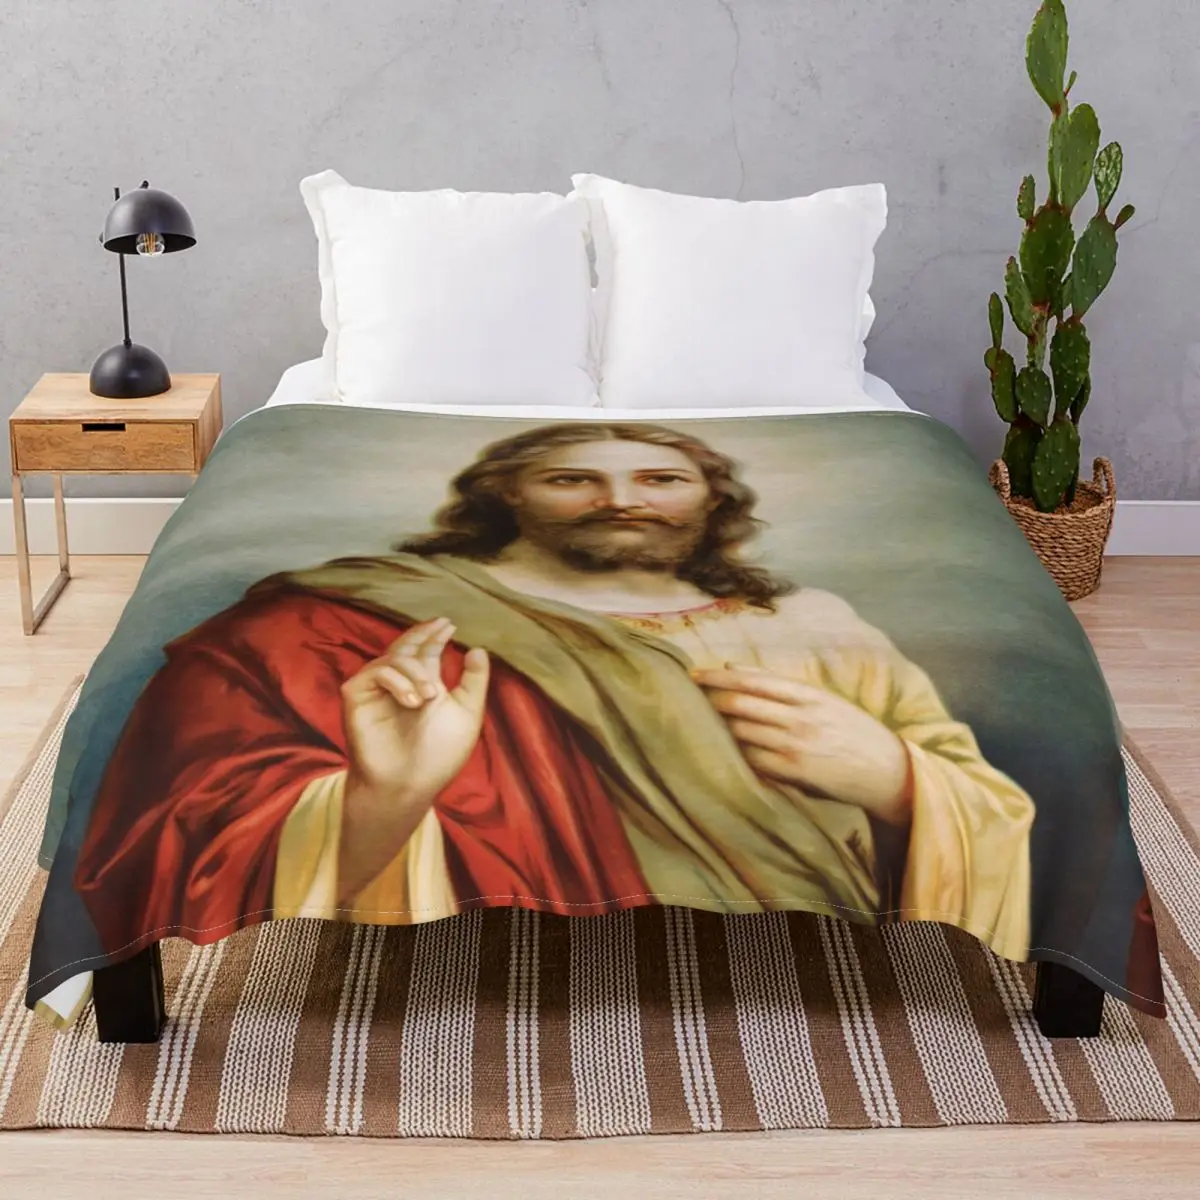 Jesus Christ Painting Blankets Velvet All Season Multi-function Throw Blanket for Bedding Home Couch Travel Office